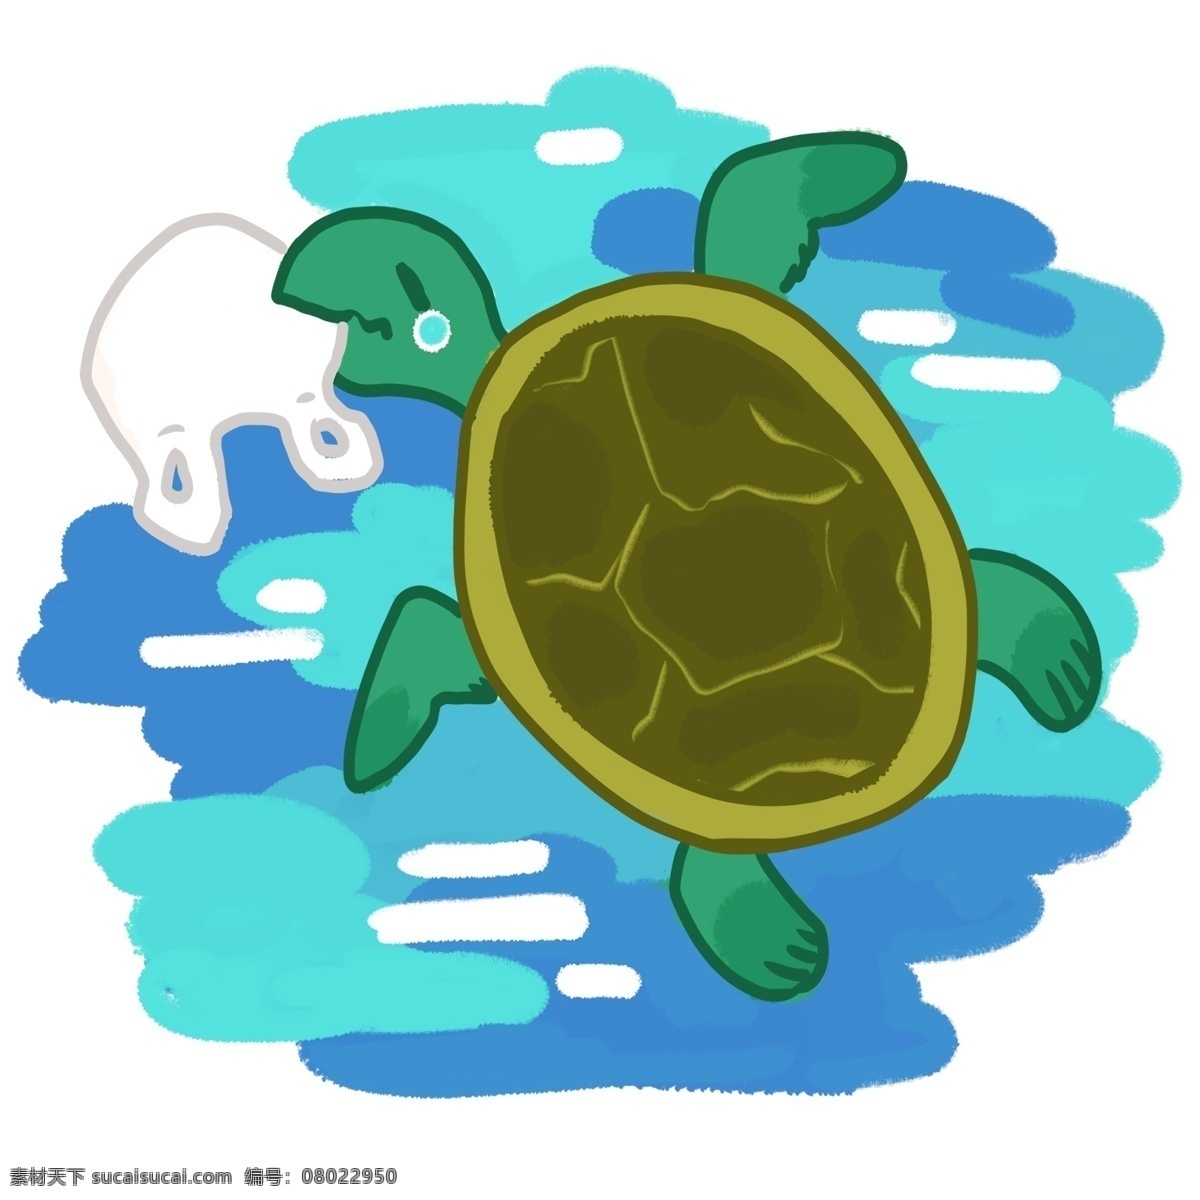 海洋生物 乌龟 插画 爱护海洋 保护环境 海水 净化海水 海洋乌龟插画 蓝色海水